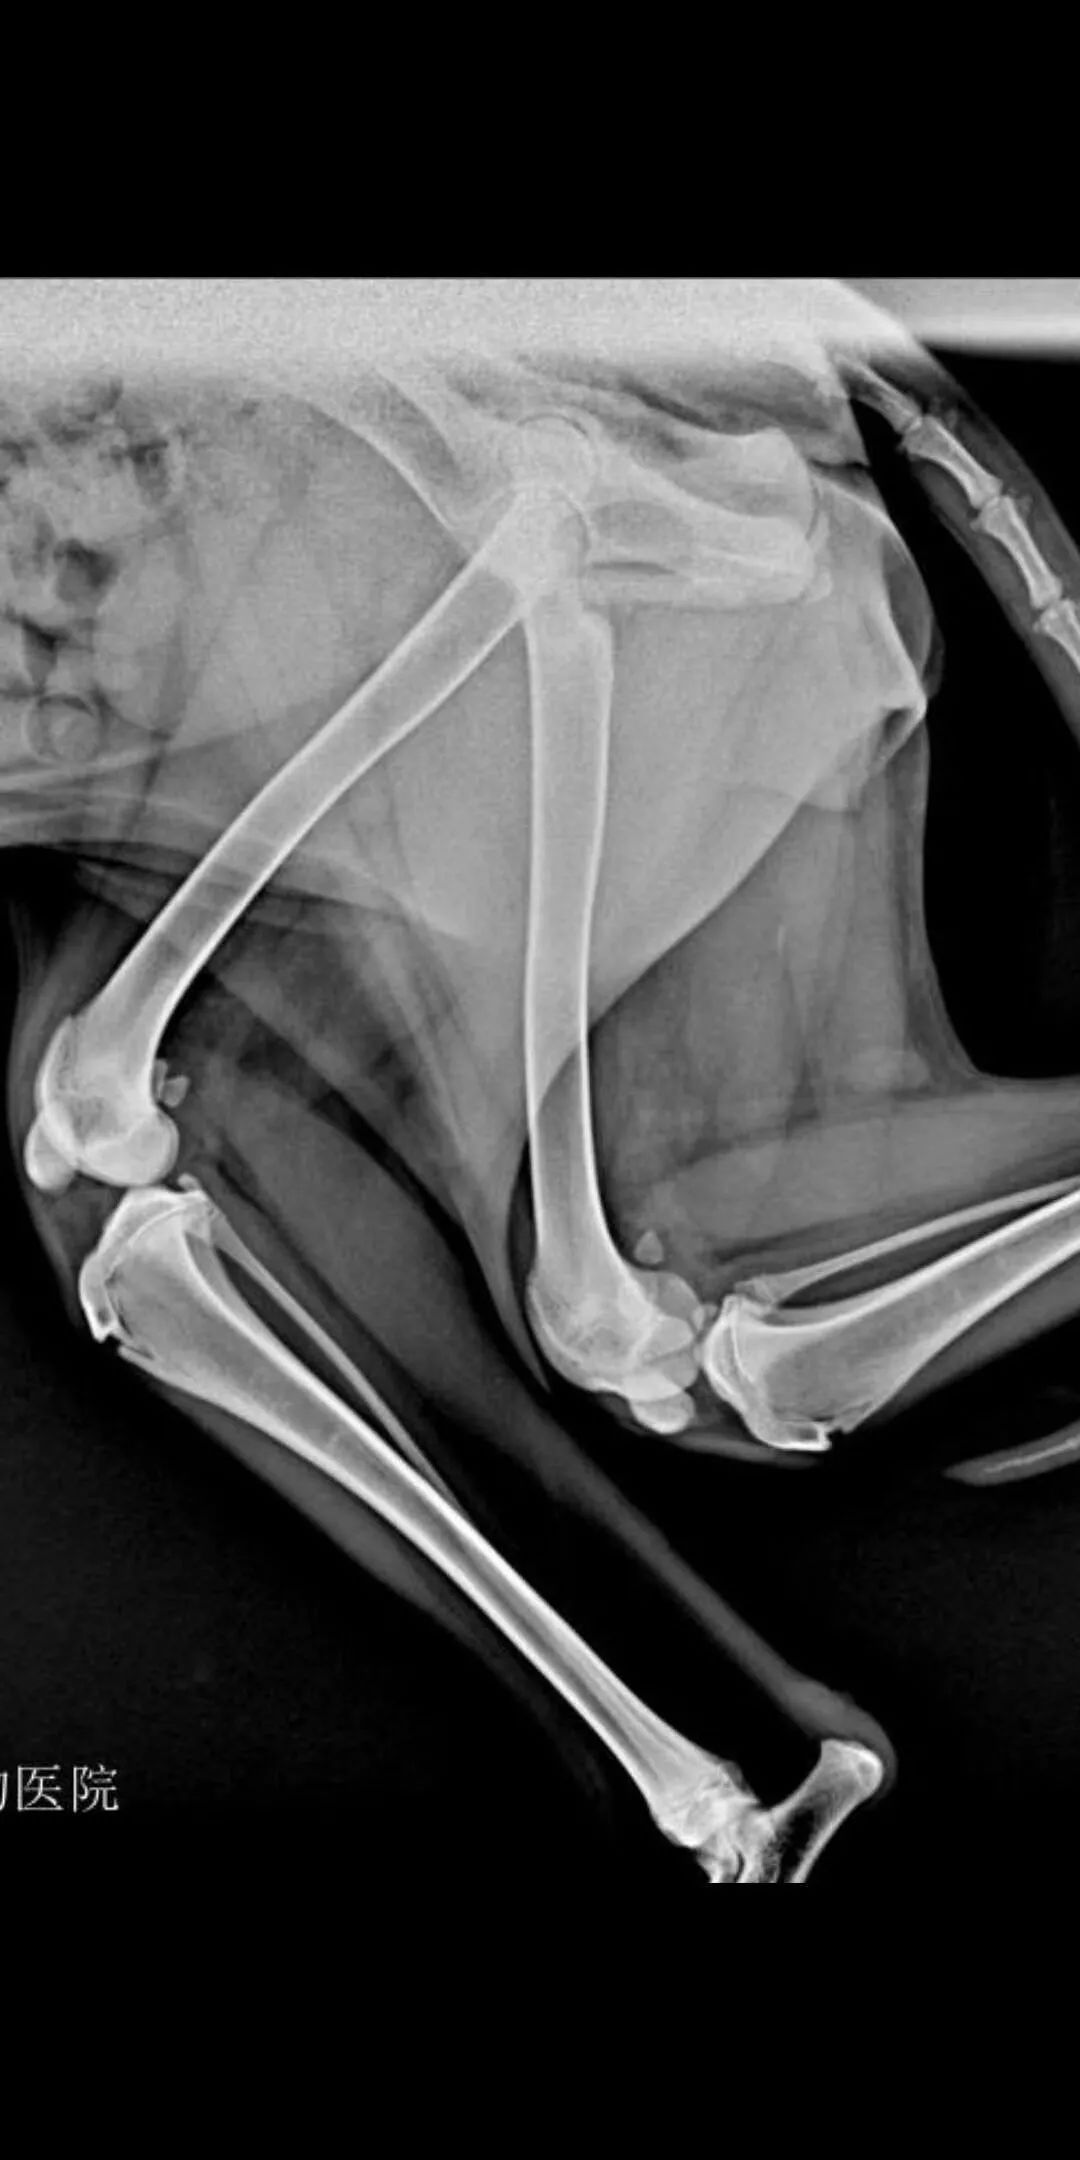 病例分享阿拉斯加犬双侧髌骨脱位pgr滑车沟置换系统临床病例分享